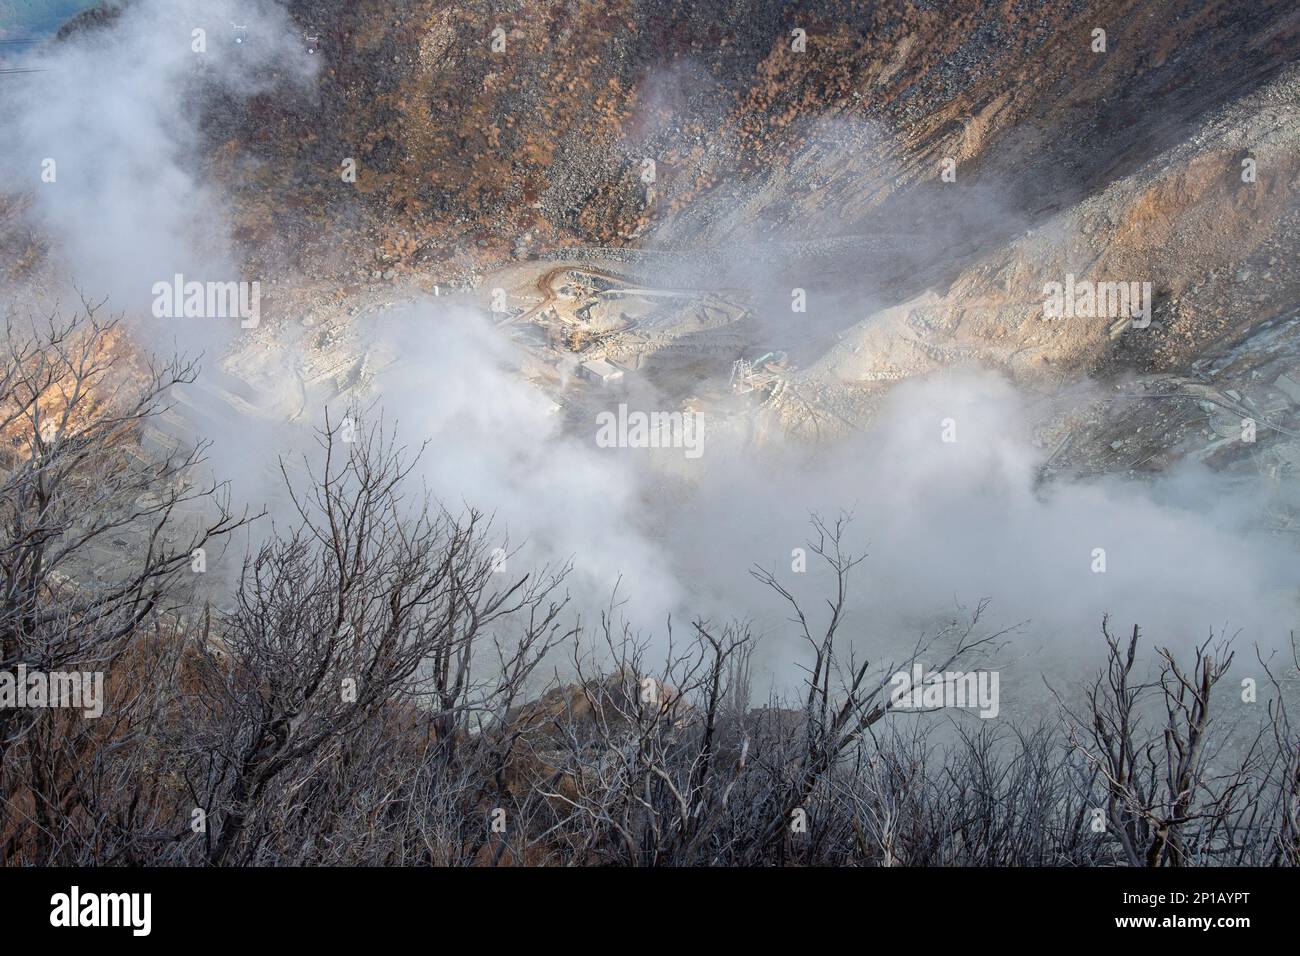 Valle di Owakudani a Hakone, una zona vulcanica attiva con sorgenti termali, sfiati e fumi sulfurei. Foto Stock